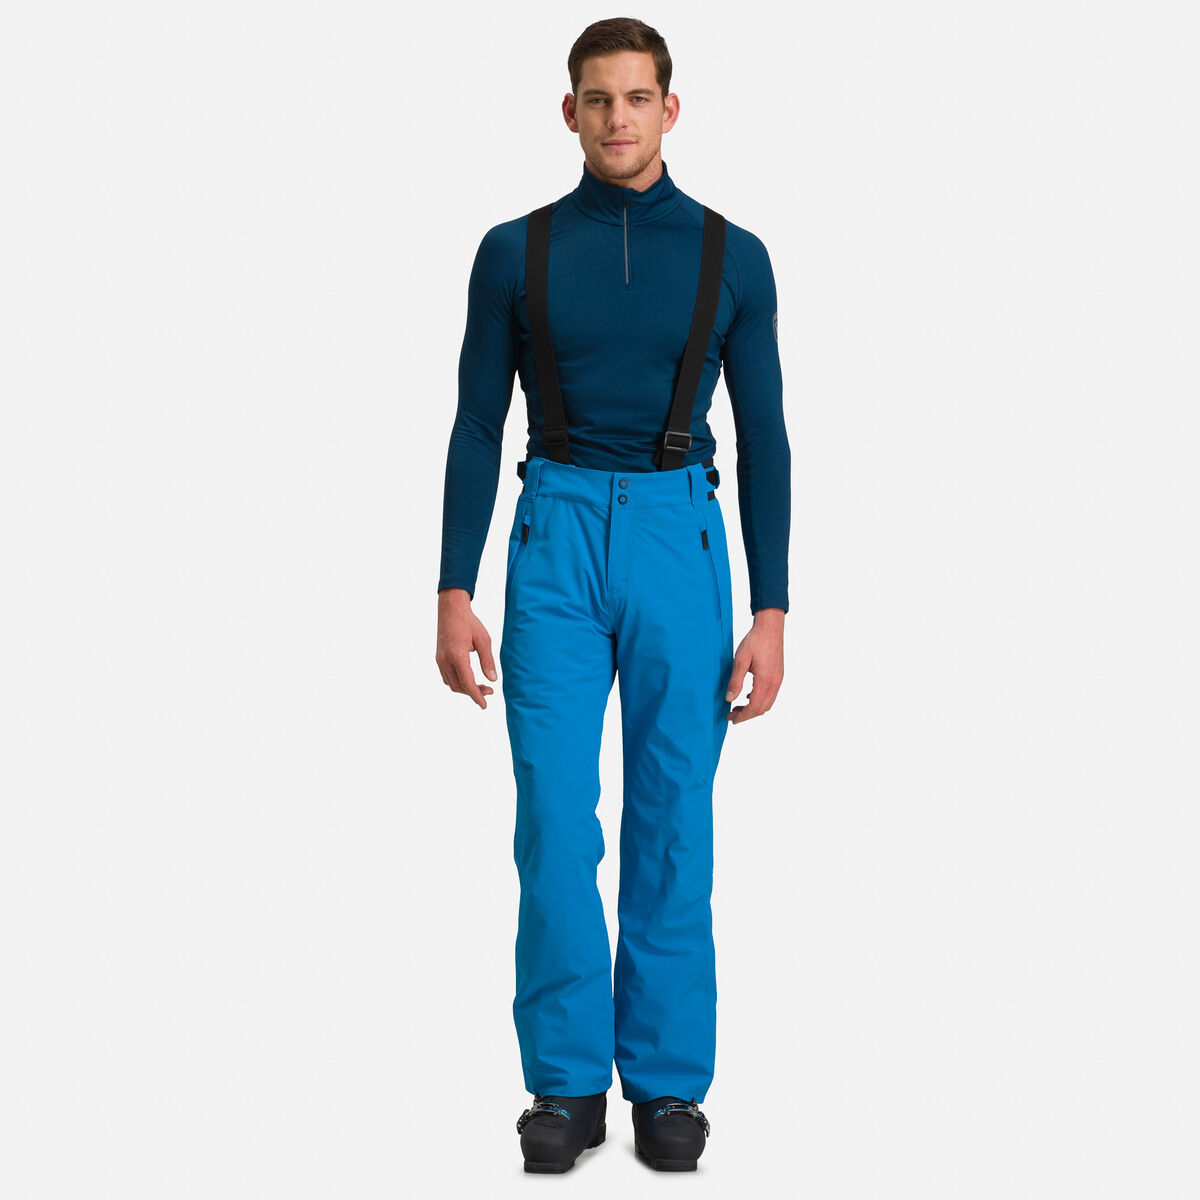 Pantalones de esquí Course para hombre